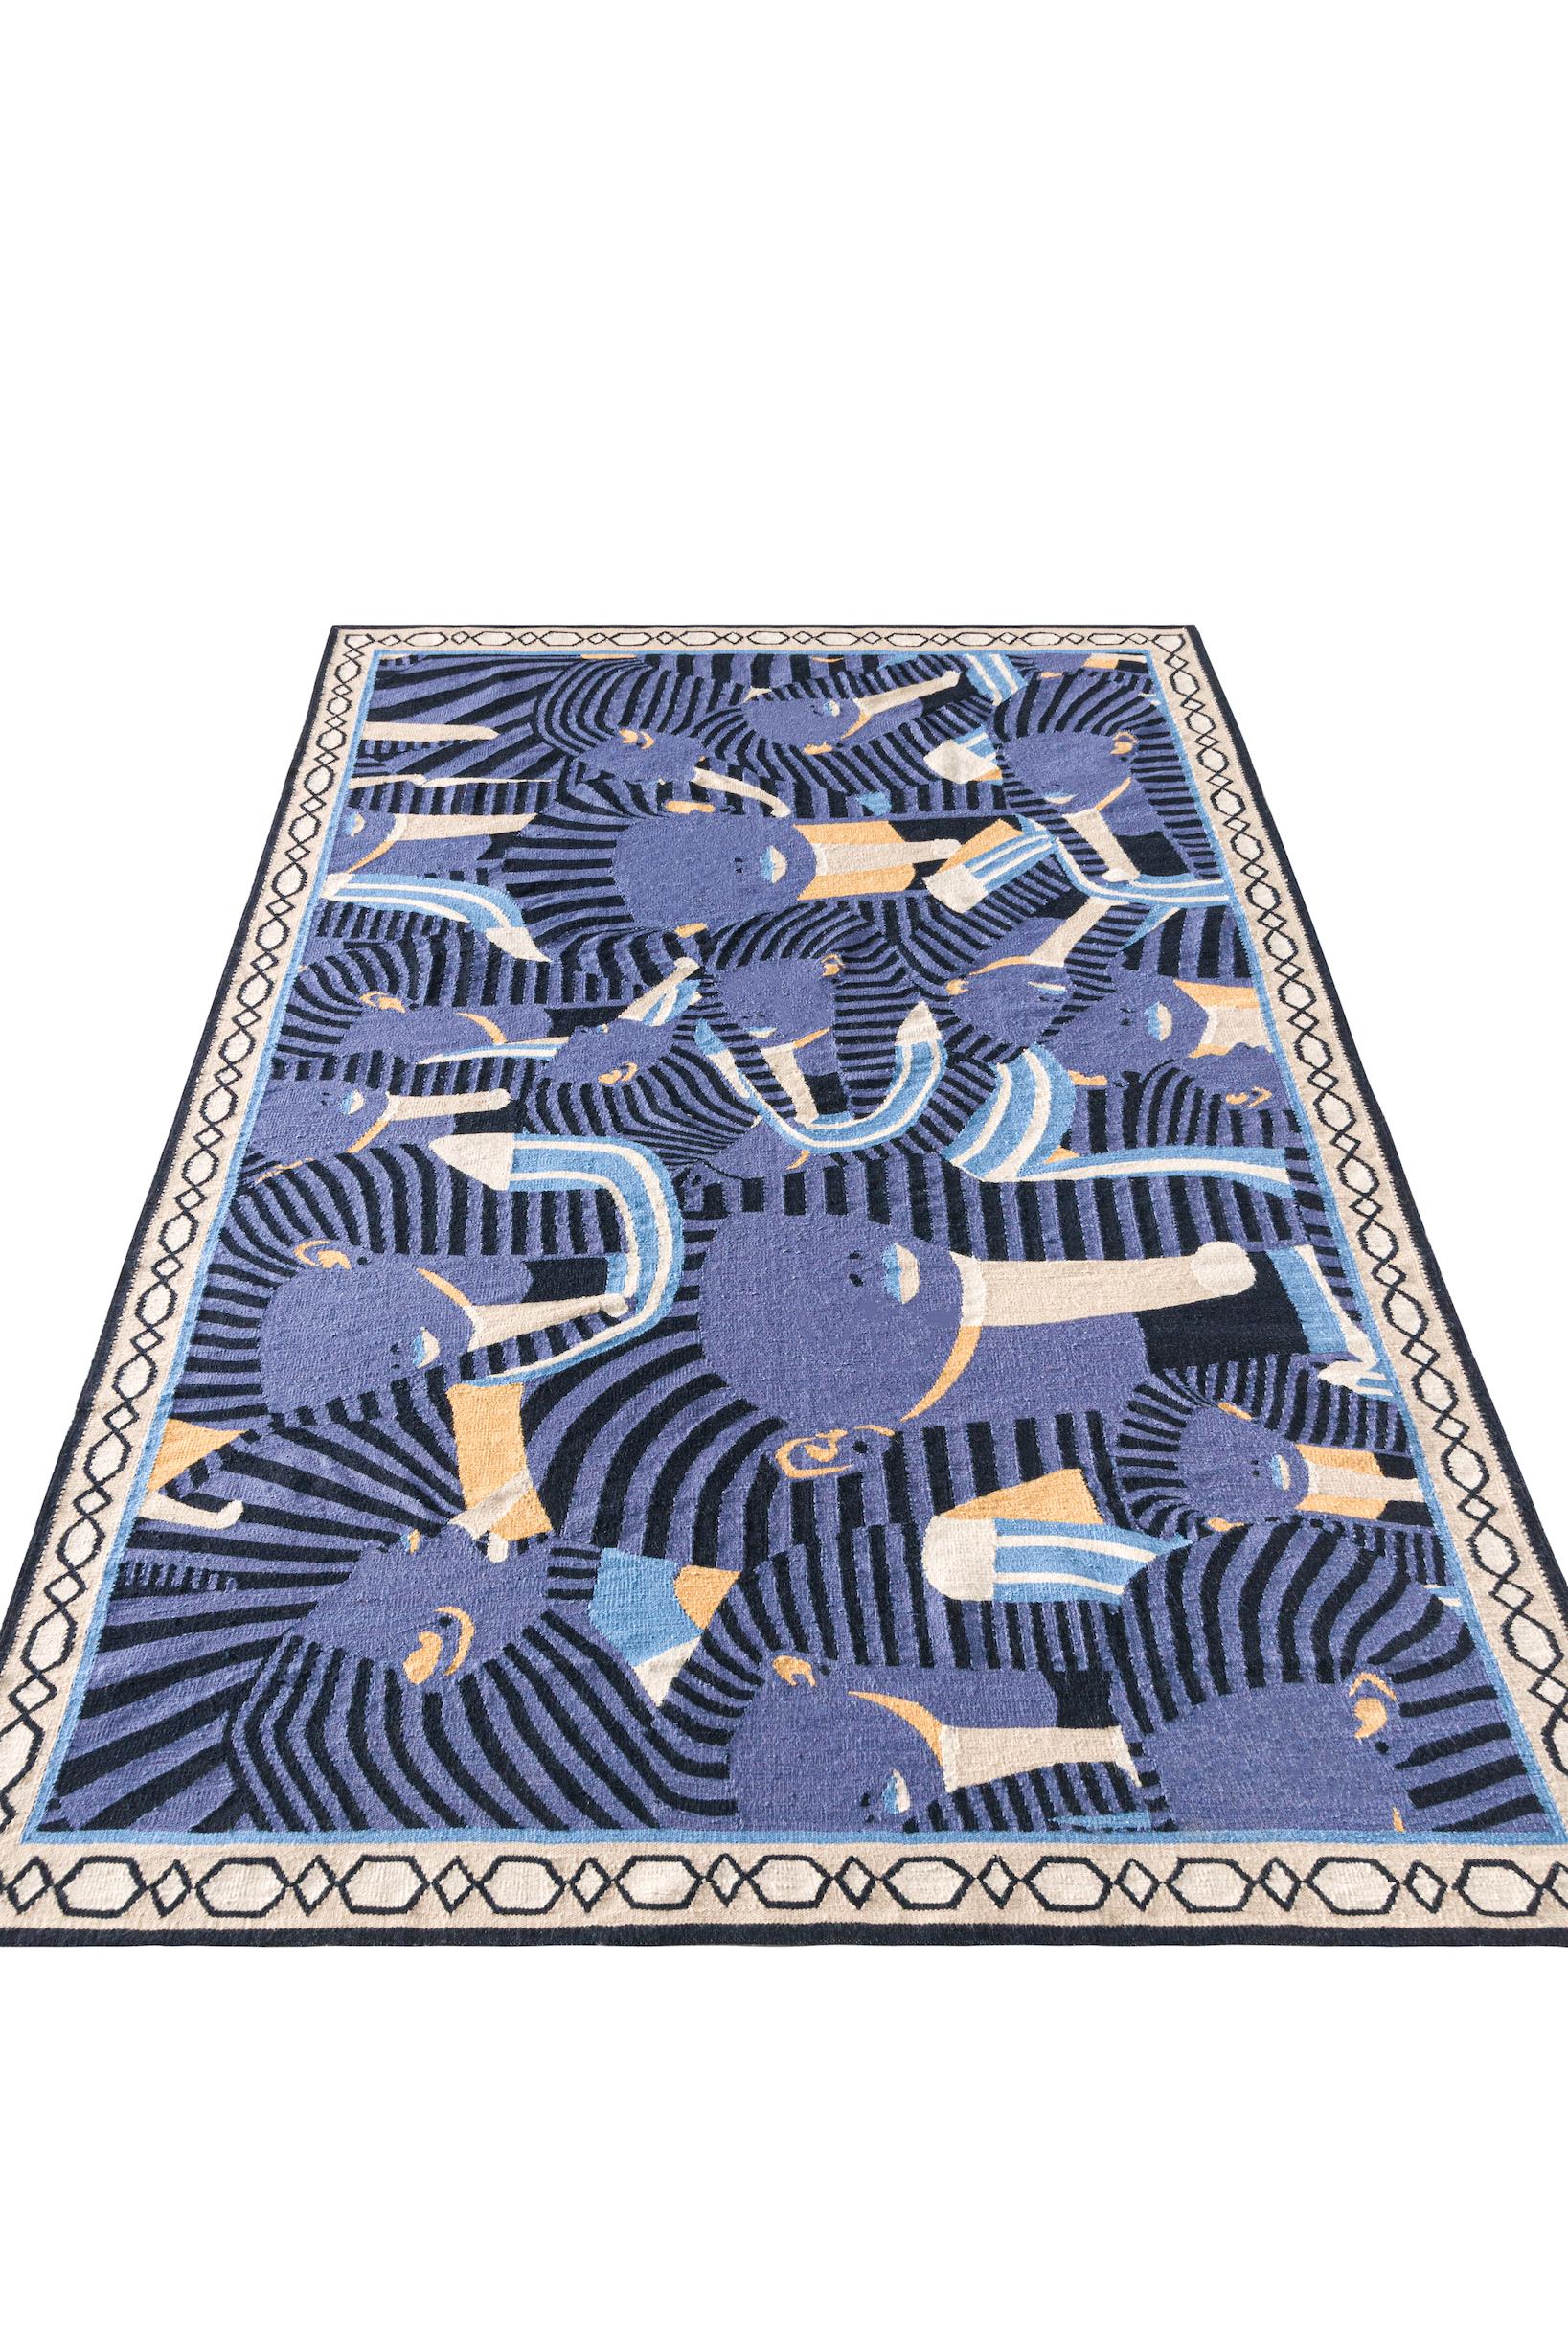 Über den Wandteppich:
Dieser Wandteppich ist ein flach gewebter Teppich mit 6 Stichen pro 1 cm. Es besteht aus 100% neuseeländischer Wolle für das Obermaterial und
100% ägyptische Baumwolle für die Kette. Die Florhöhe beträgt etwa 3 mm und das